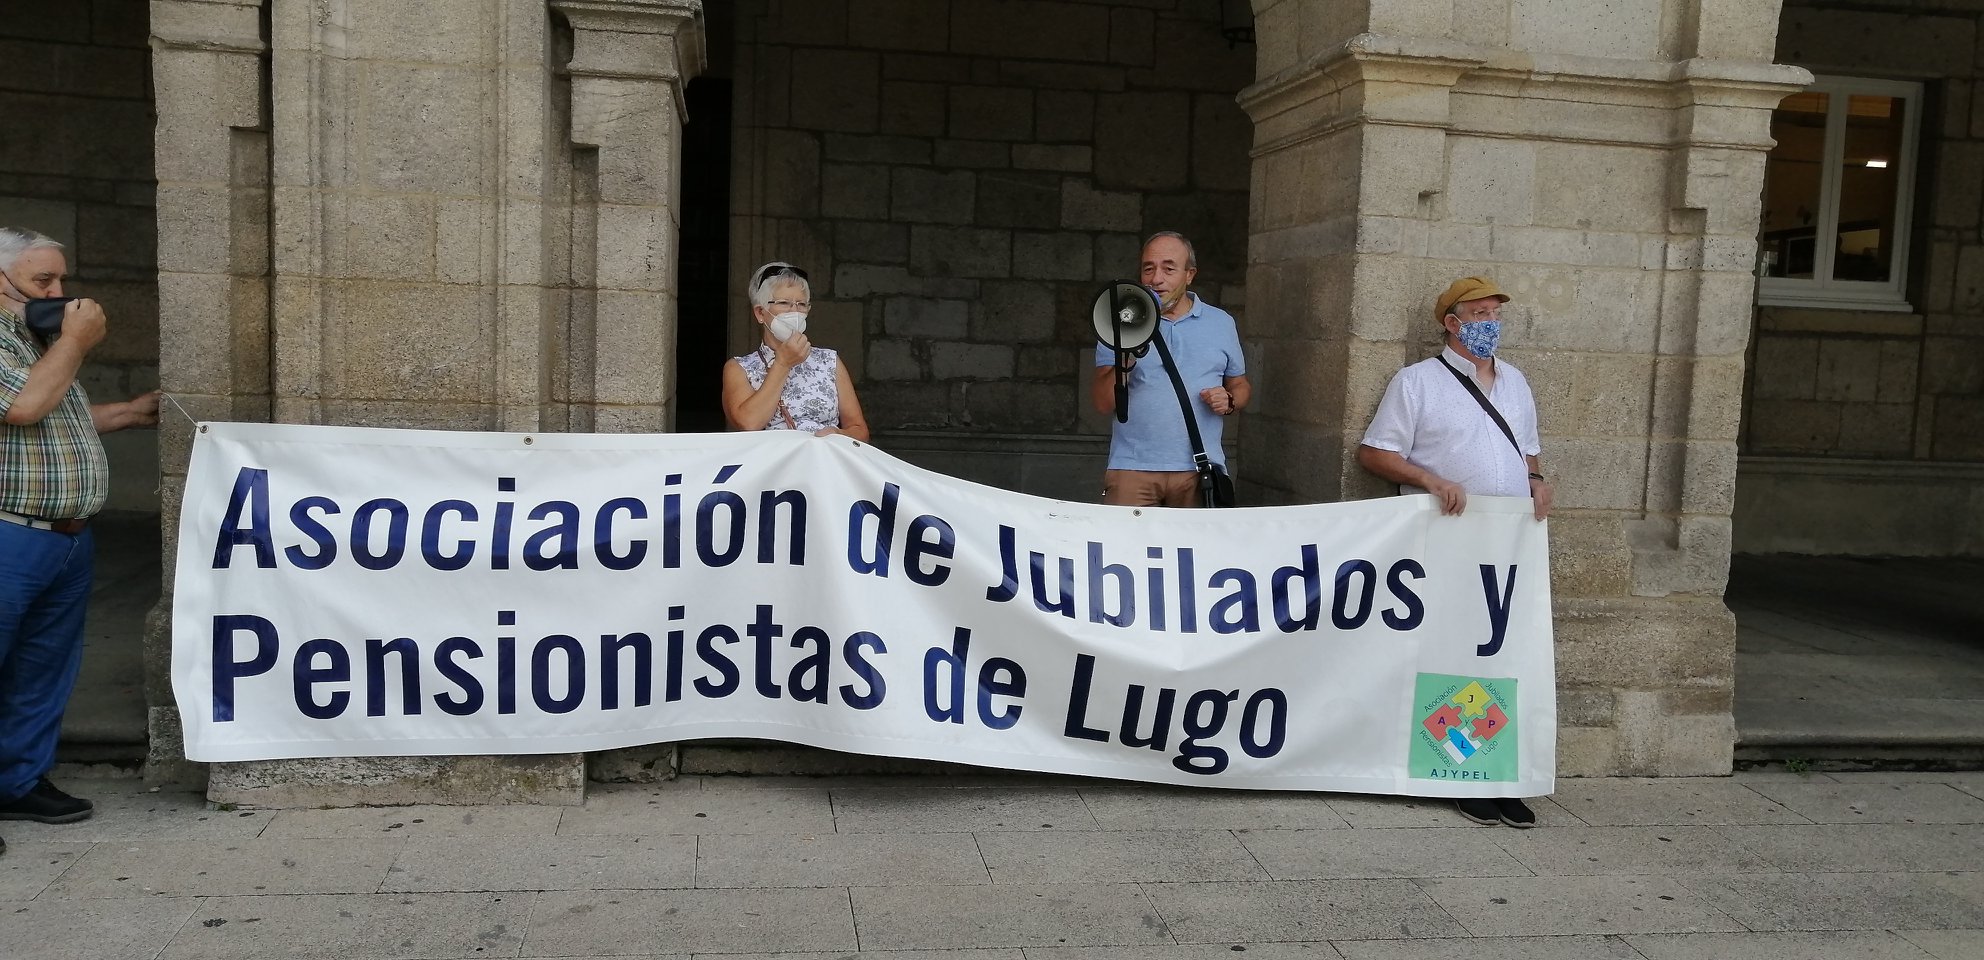 La Asociación de Jubilados y Pensionistas de Lugo, convoca una concentración de Personas Mayores